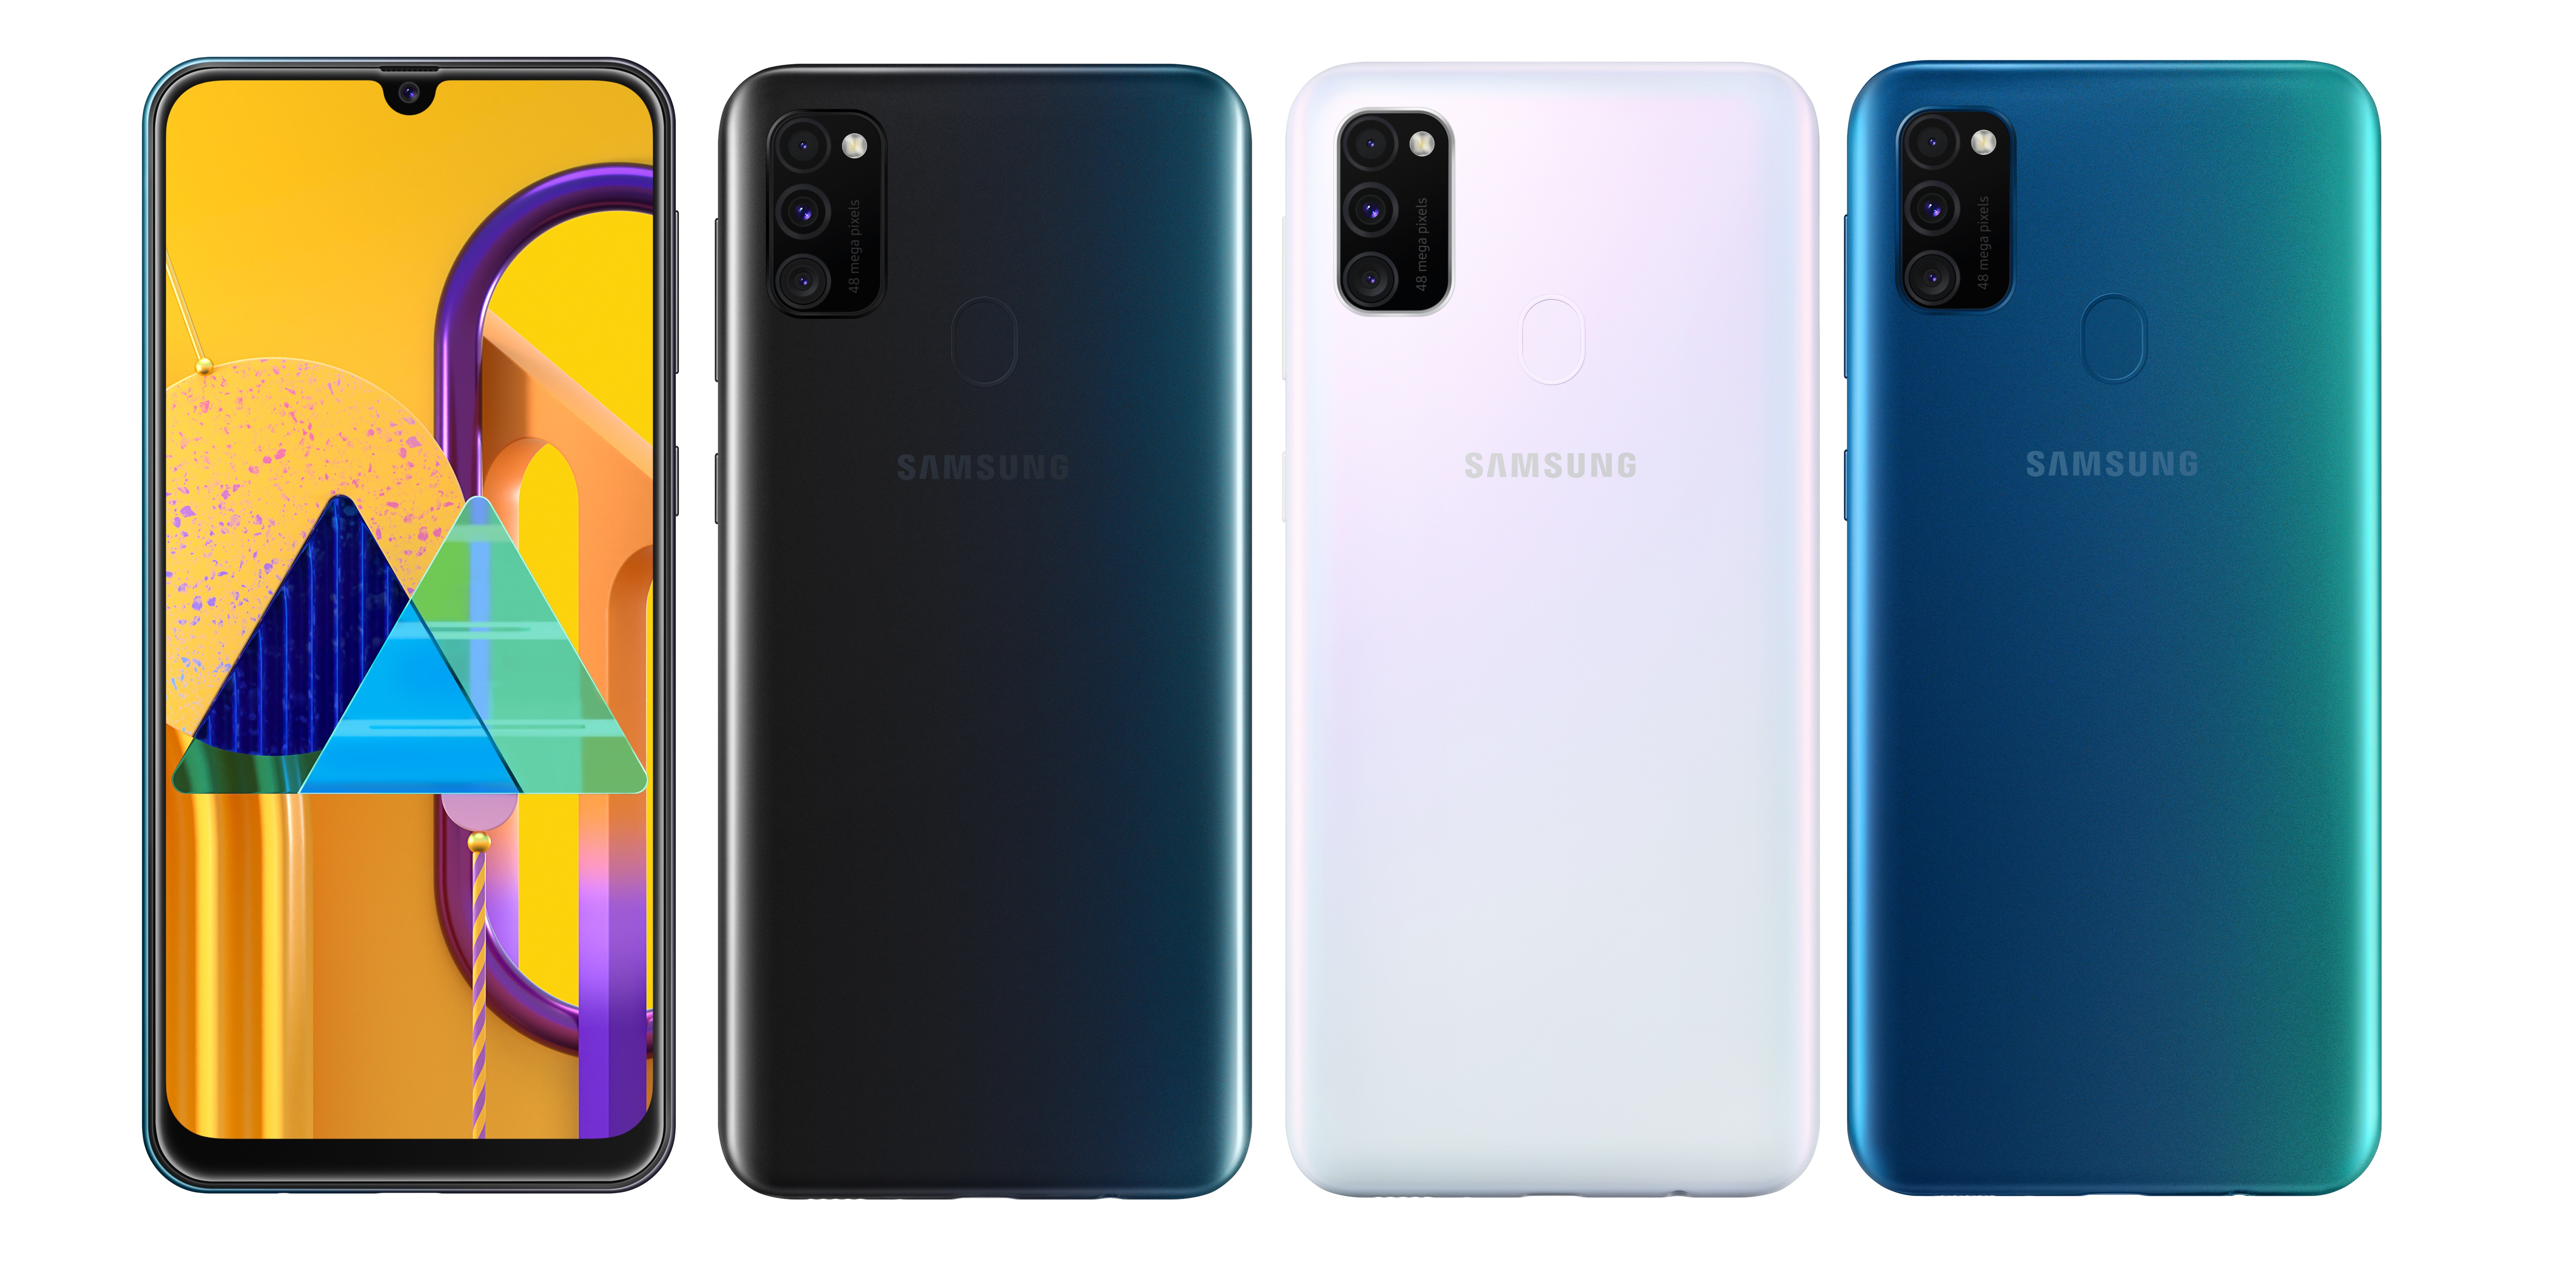 Samsung tung smartphone “siêu pin” Galaxy M30s tại Việt Nam, giá 6,990,000 VND